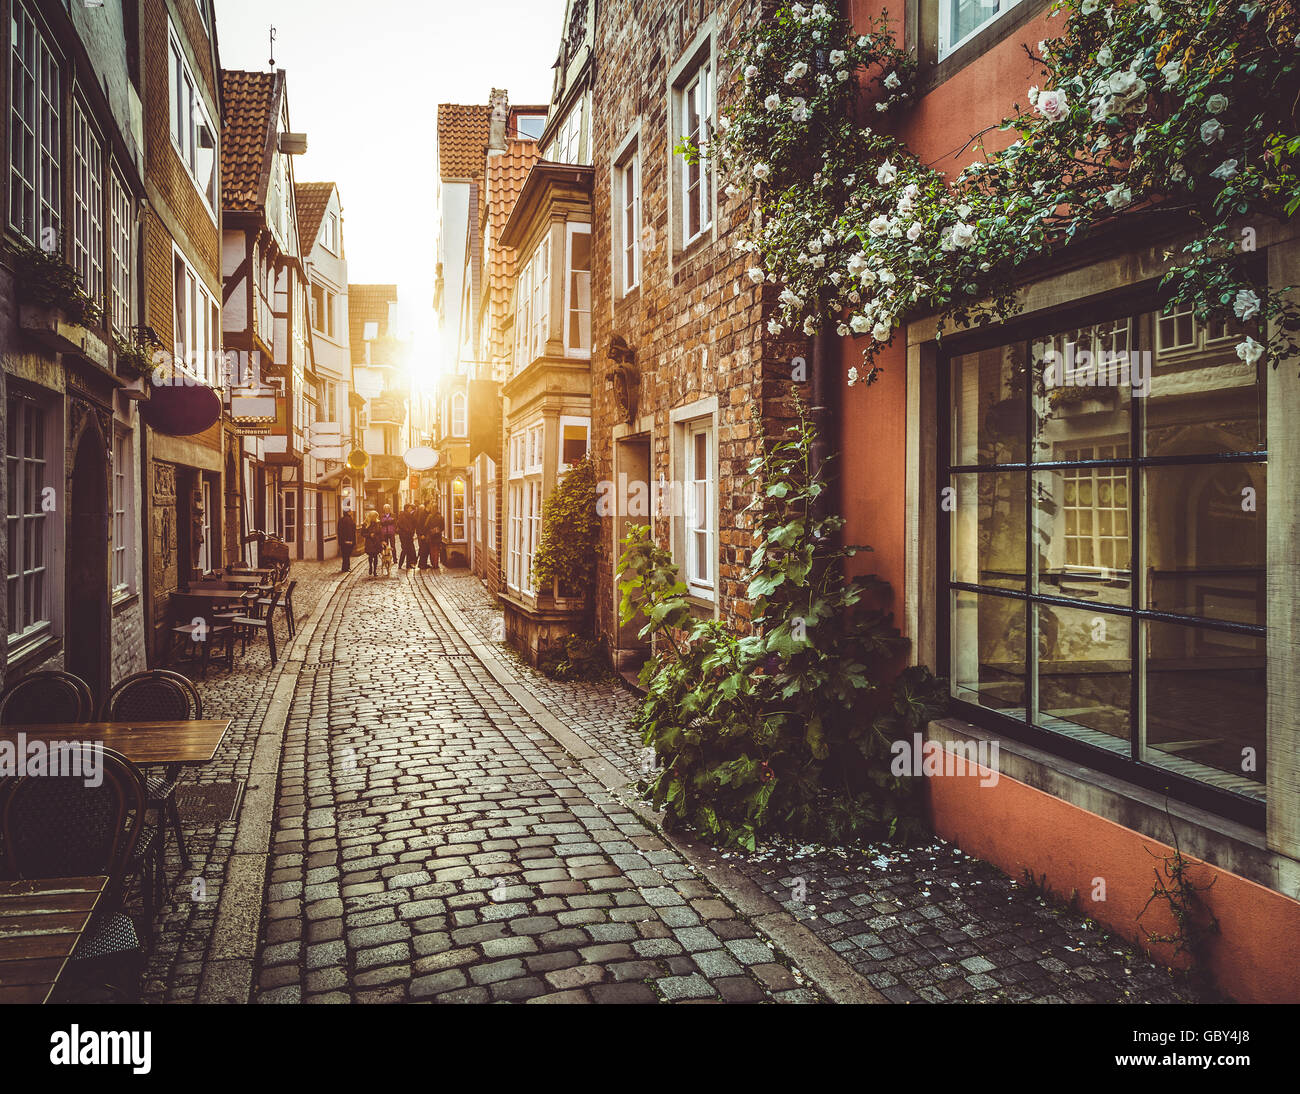 Scène de rue enchanteresse dans une ancienne ville d'Europe au coucher du soleil avec retro vintage effet du filtre Banque D'Images